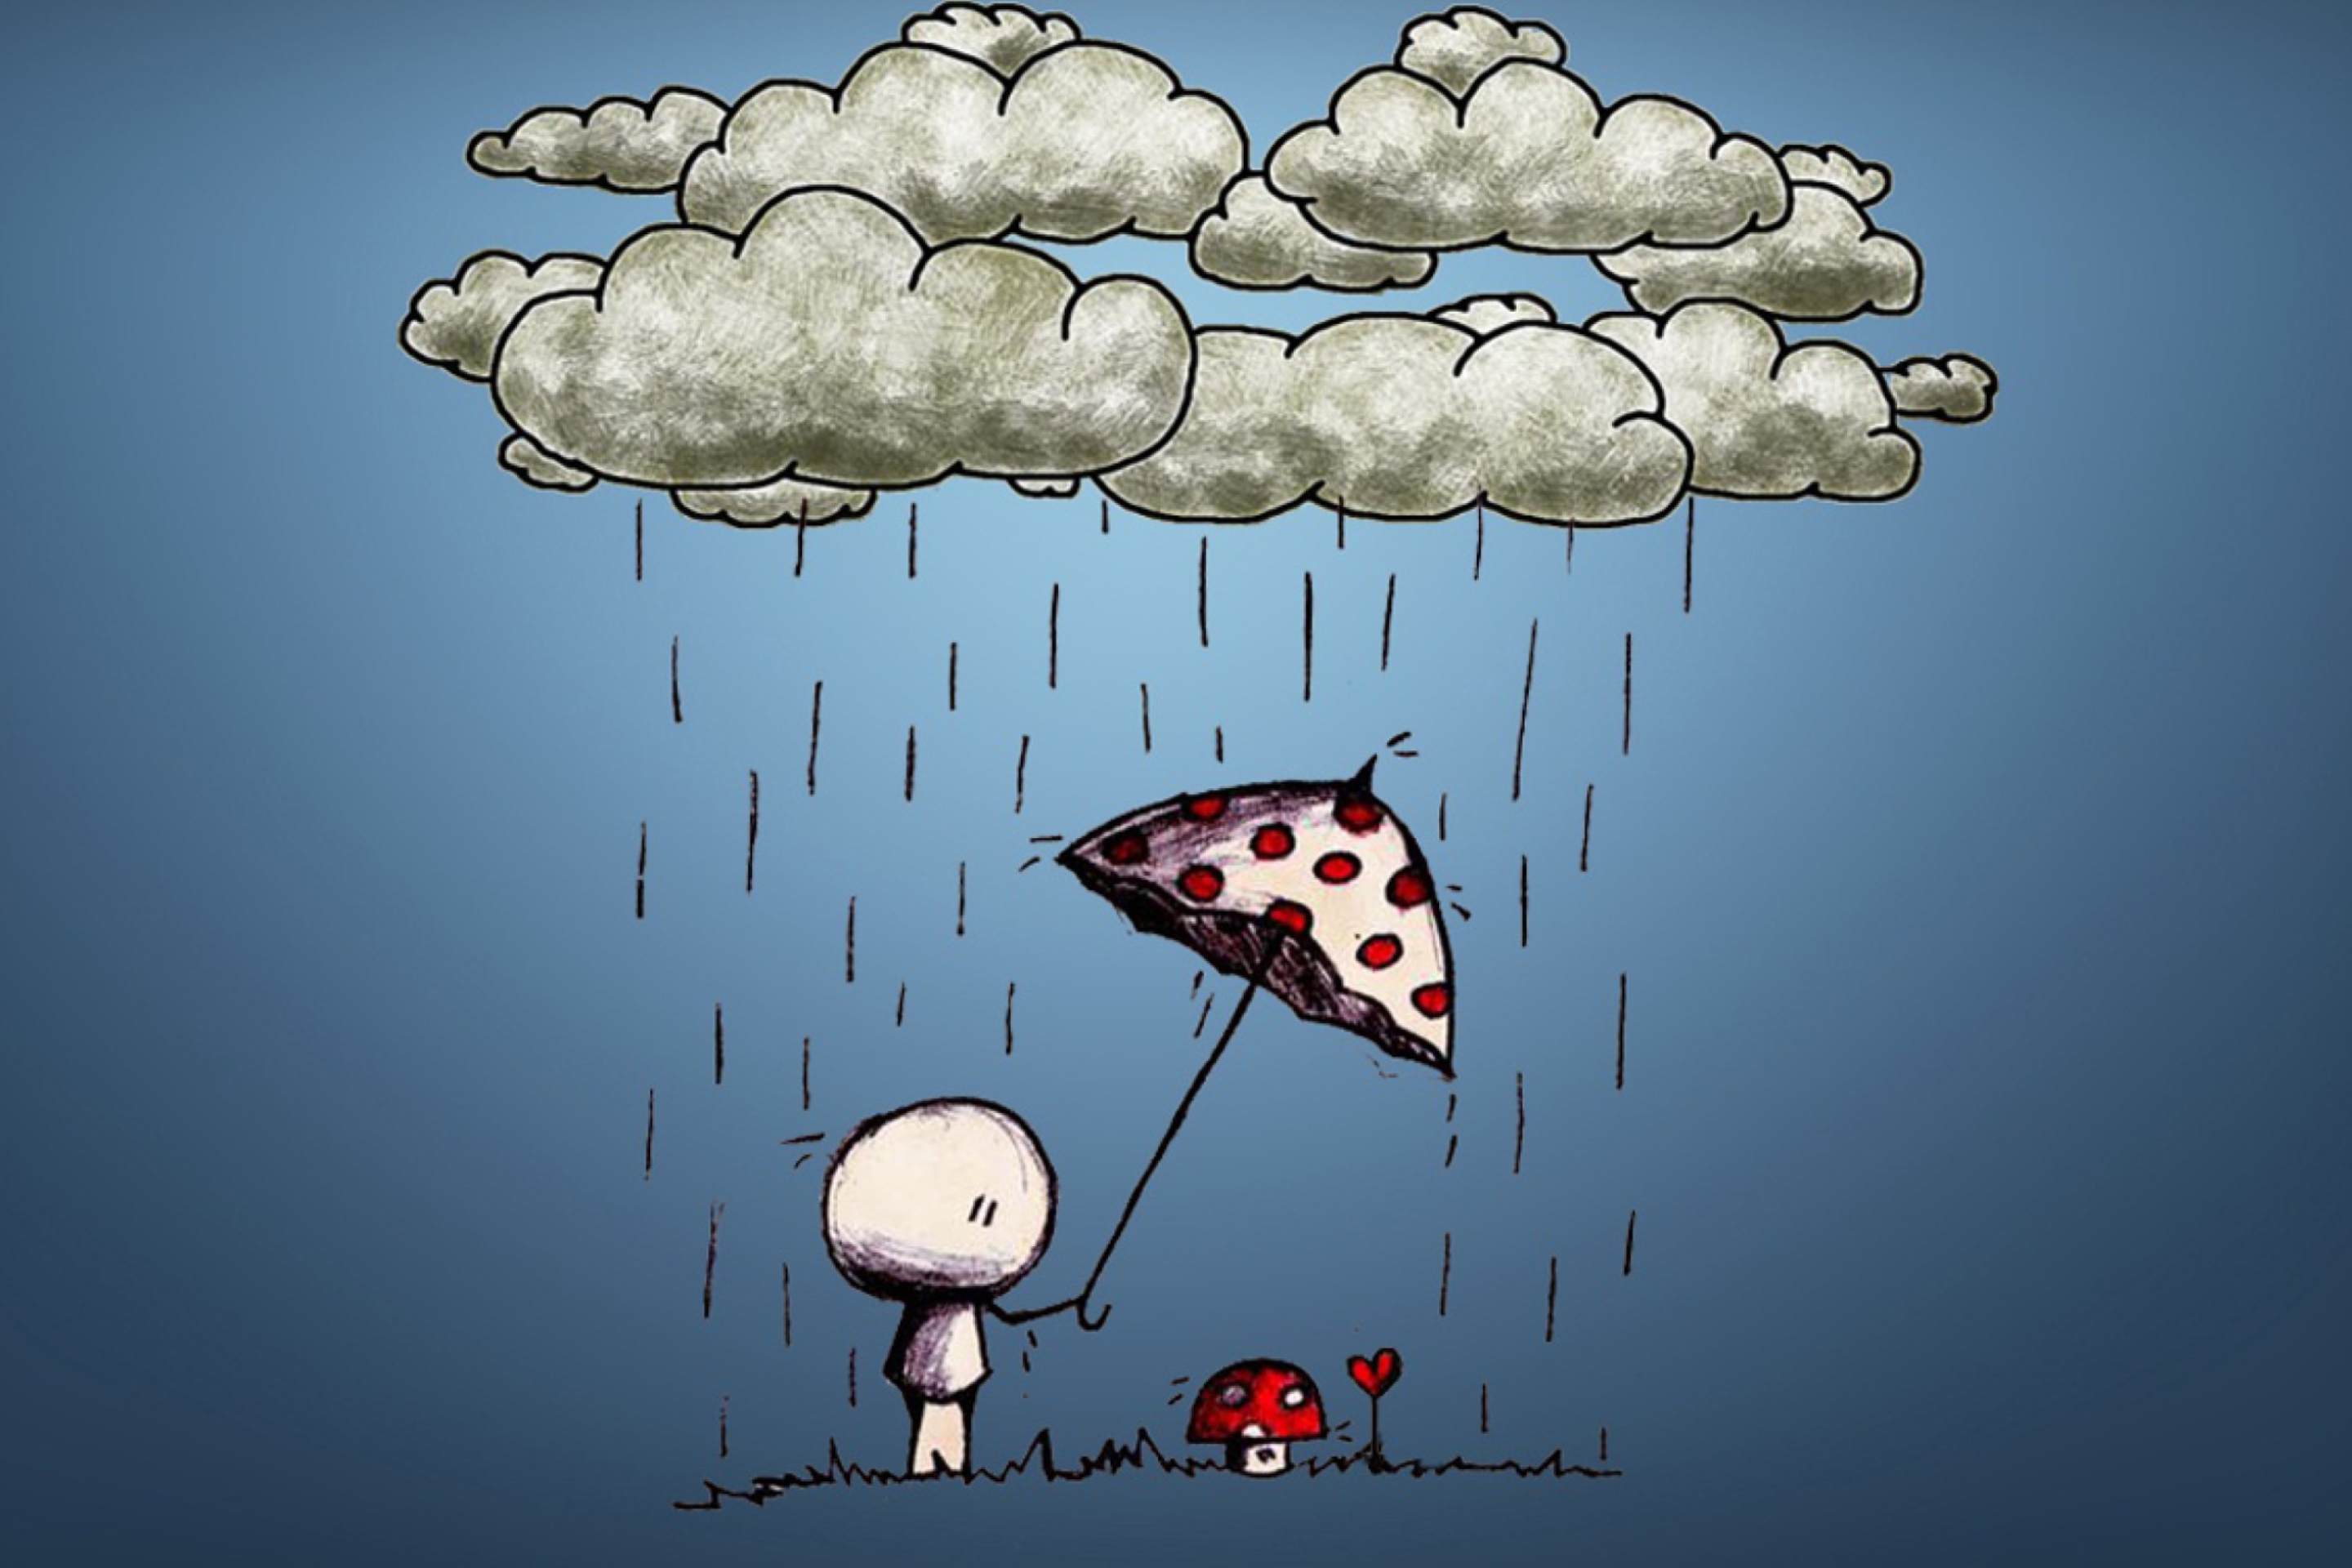 Дождь пародия. Дождь иллюстрация. Веселый дождь. Смешные открытки дождик. Грибной дождь рисунок.